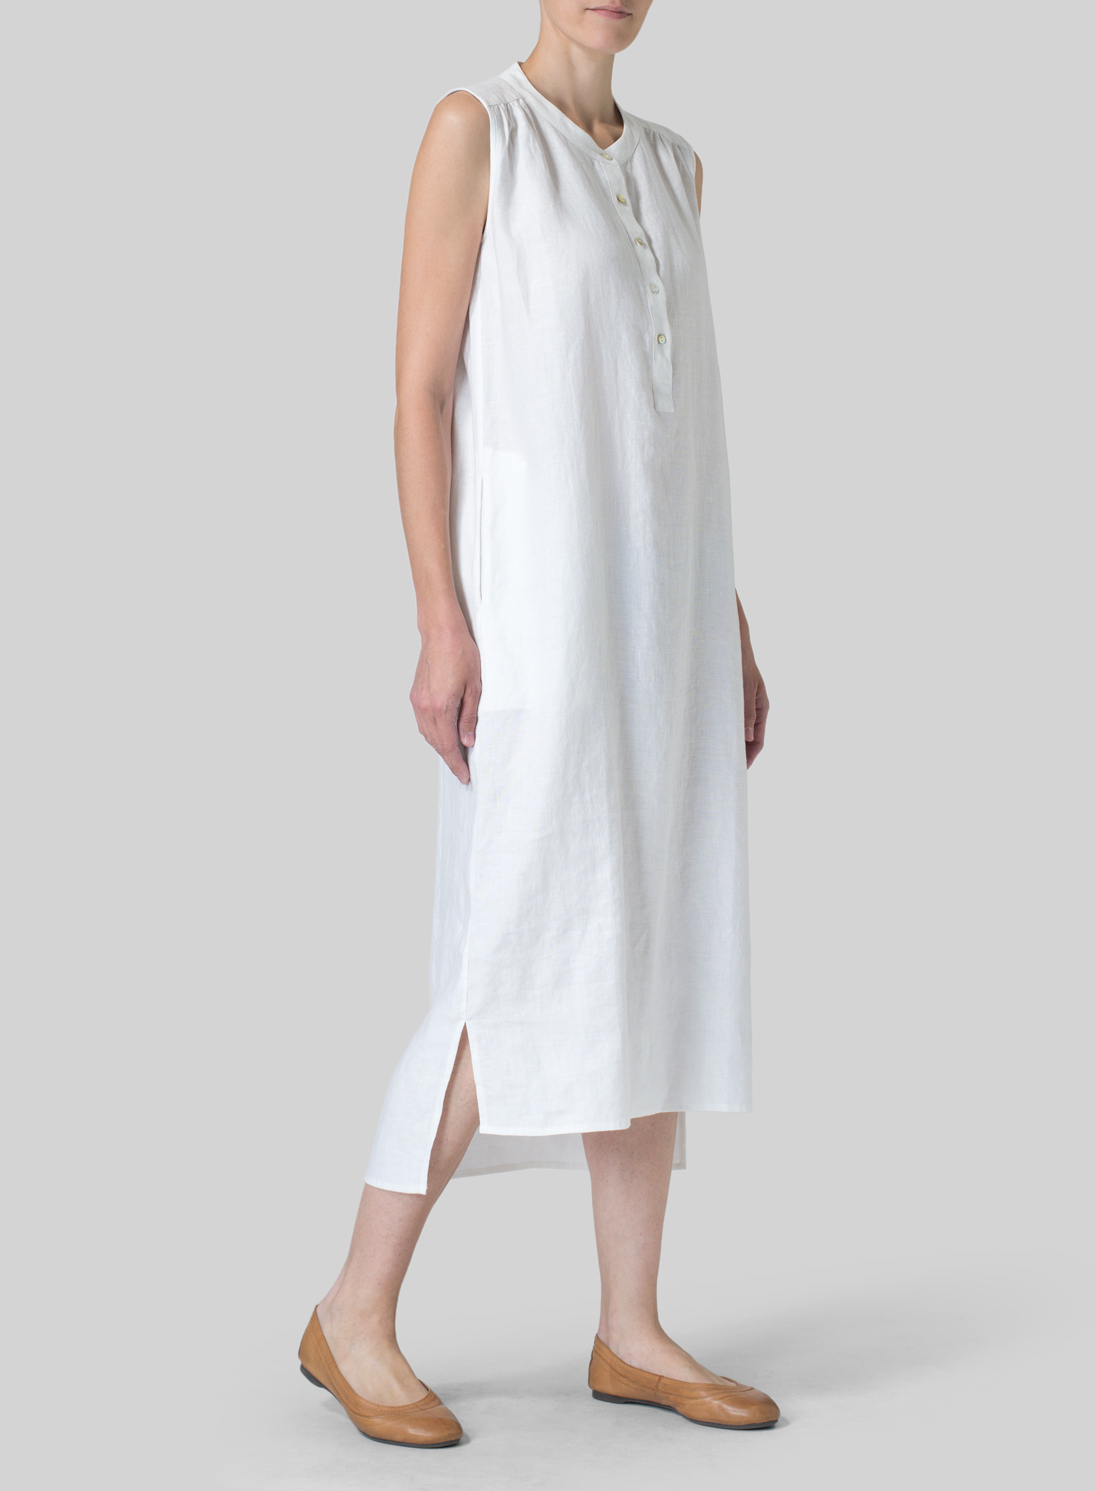 White Linen Slip On Dress - Plus Size